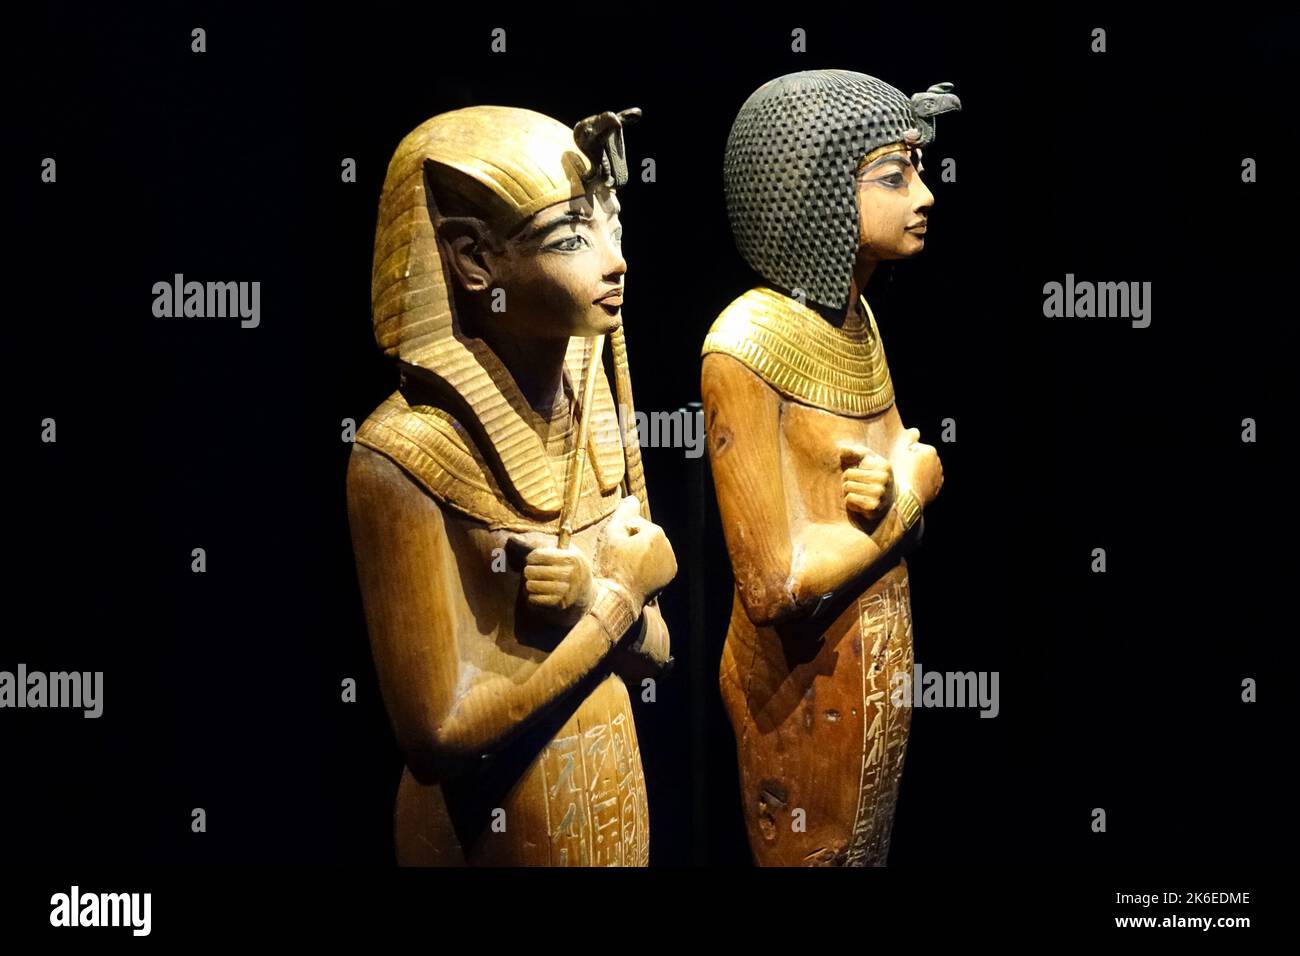 Objets funéraires en bois d'ushabtis trouvés dans le tombeau du roi Toutankhamon Banque D'Images